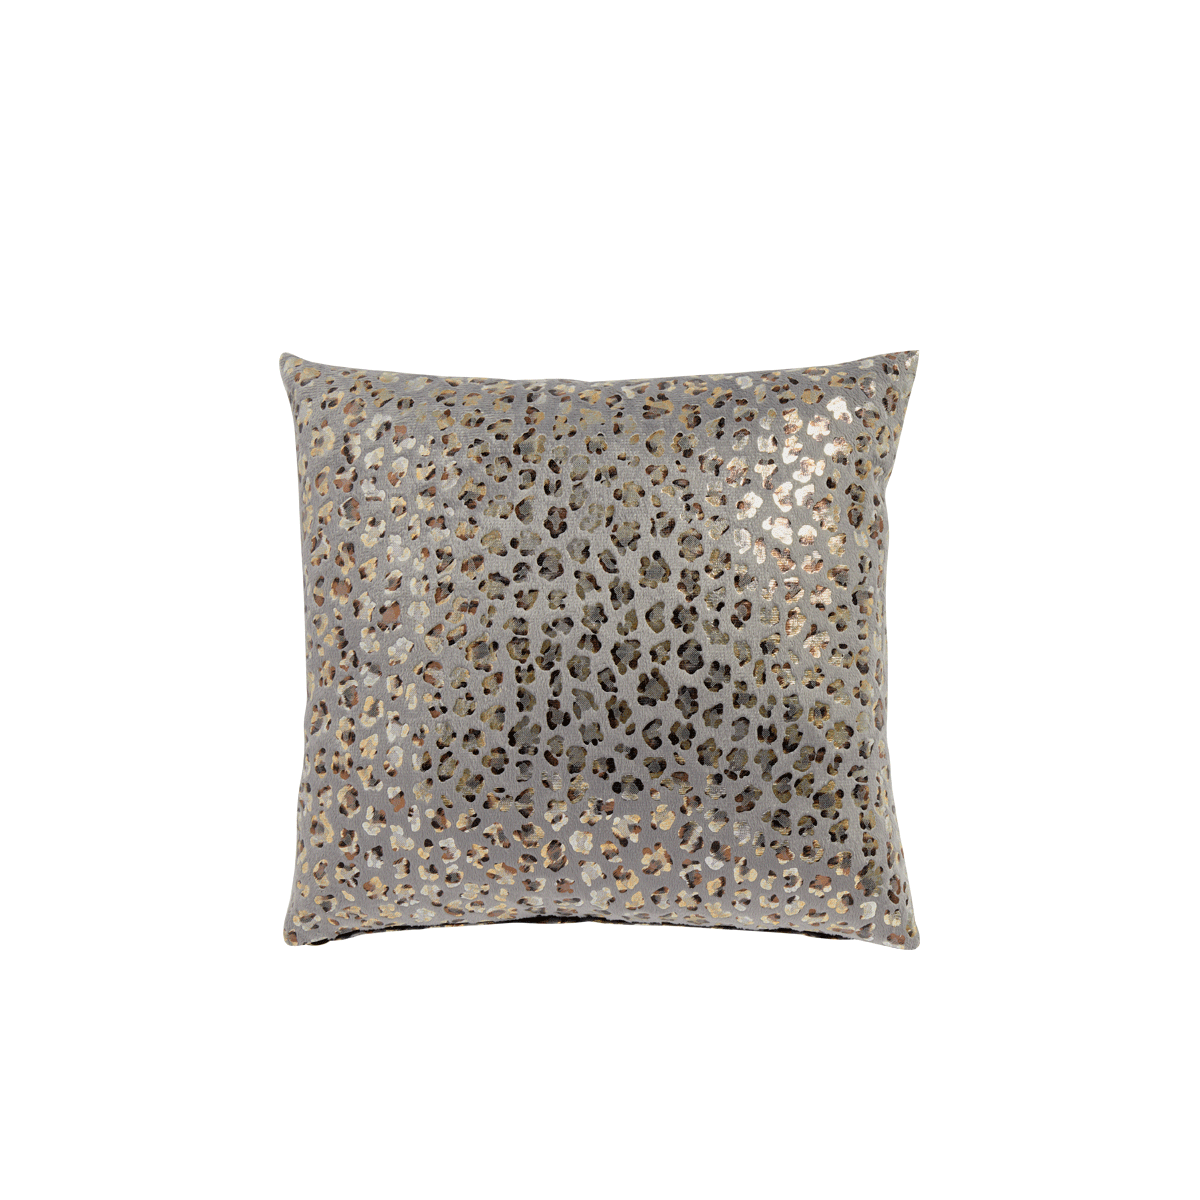 silver leopard print cushions